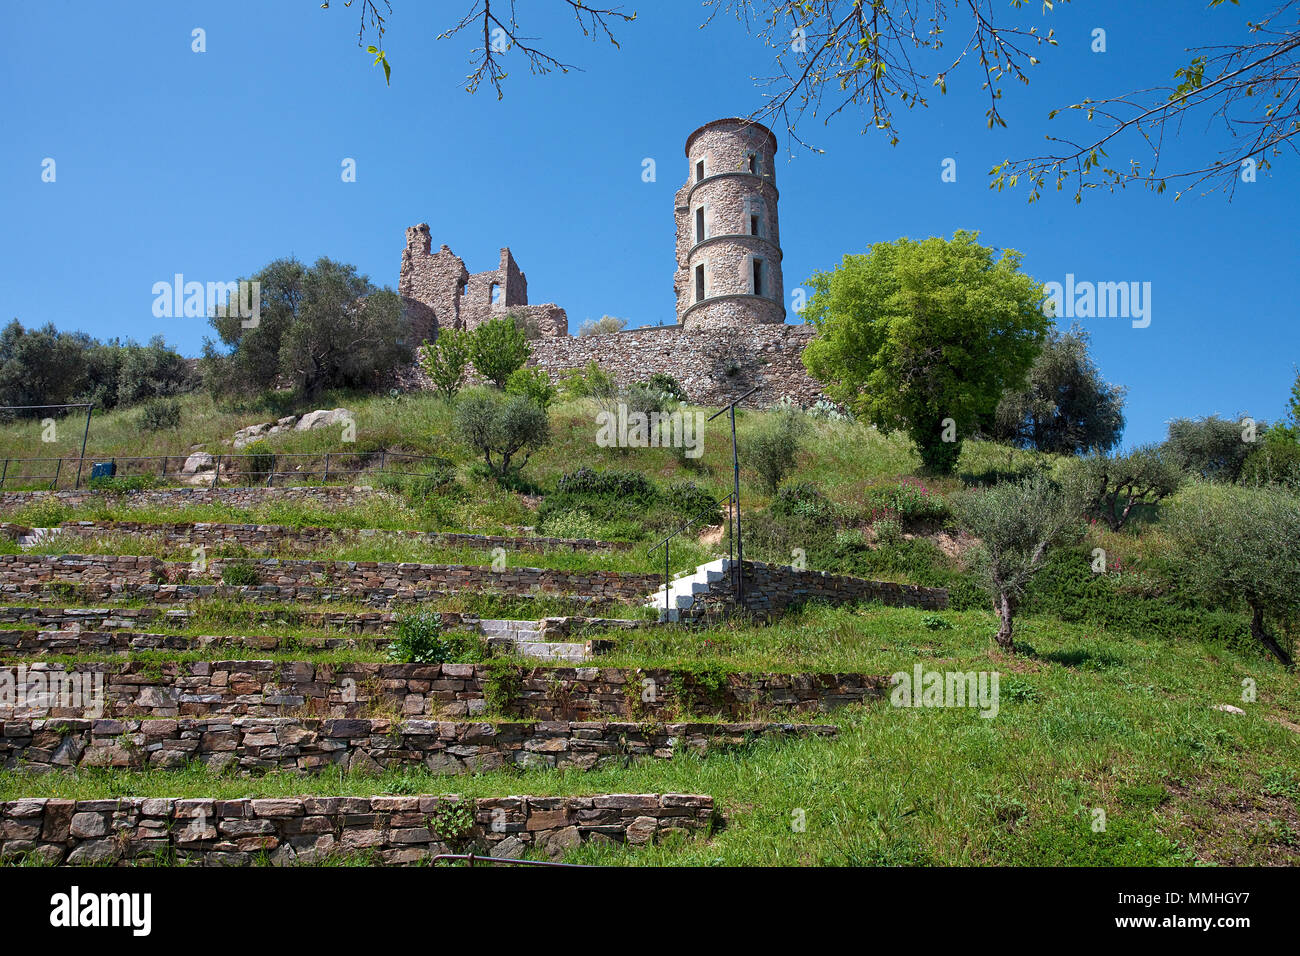 Ruines du château médiéval, 11e siècle, Grimaud-Village, Côte d'Azur, France Sud, France, Europe Banque D'Images